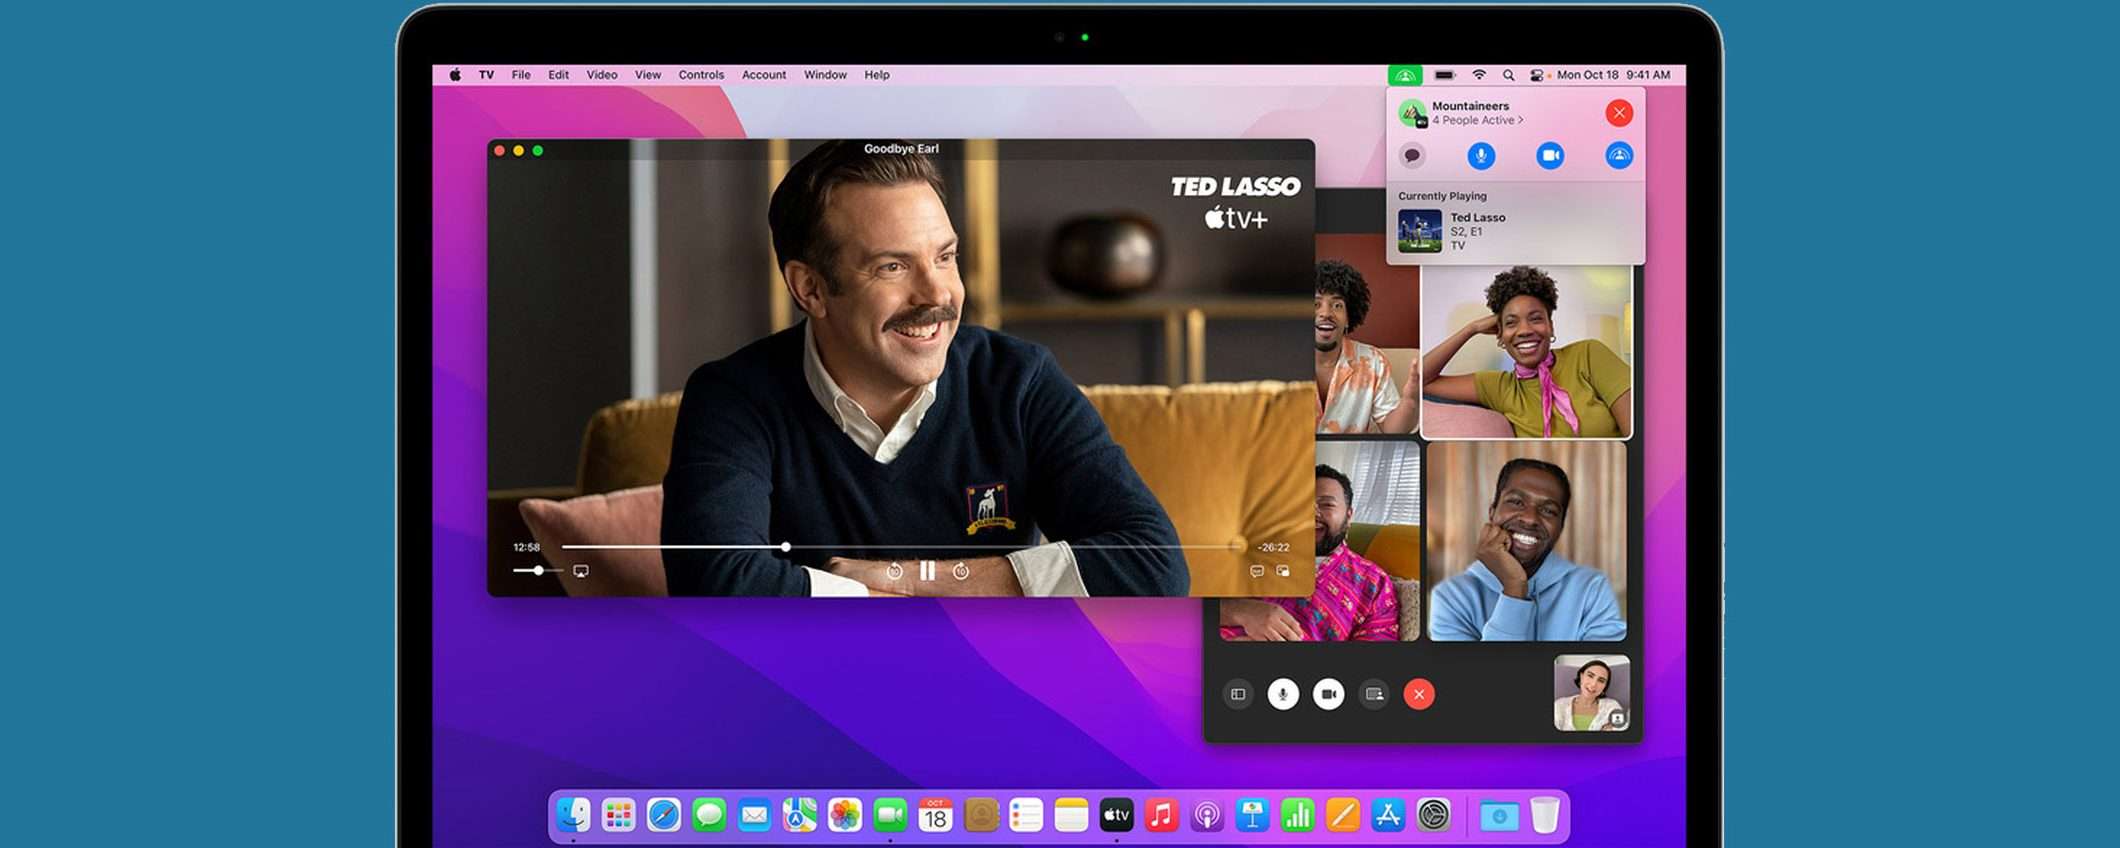 macOS Monterey 12.1: SharePlay e altre novità